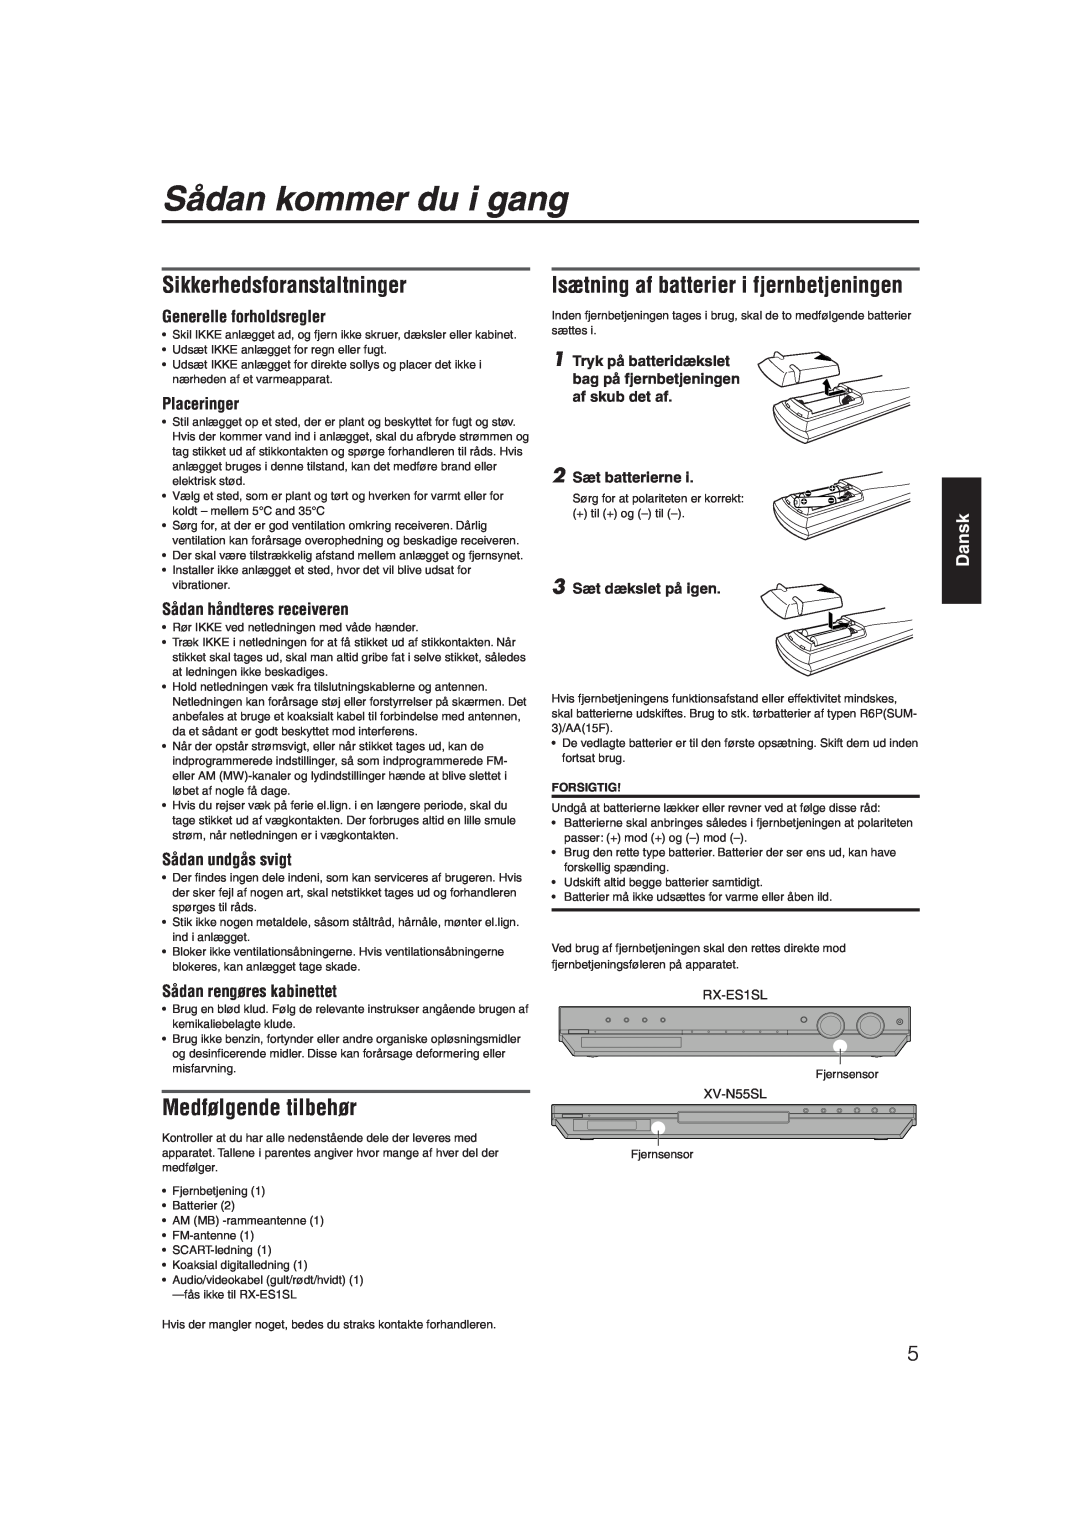 JVC RX-ES1SL manual Sådan kommer du i gang, Sikkerhedsforanstaltninger, Isætning af batterier i fjernbetjeningen, Dansk 